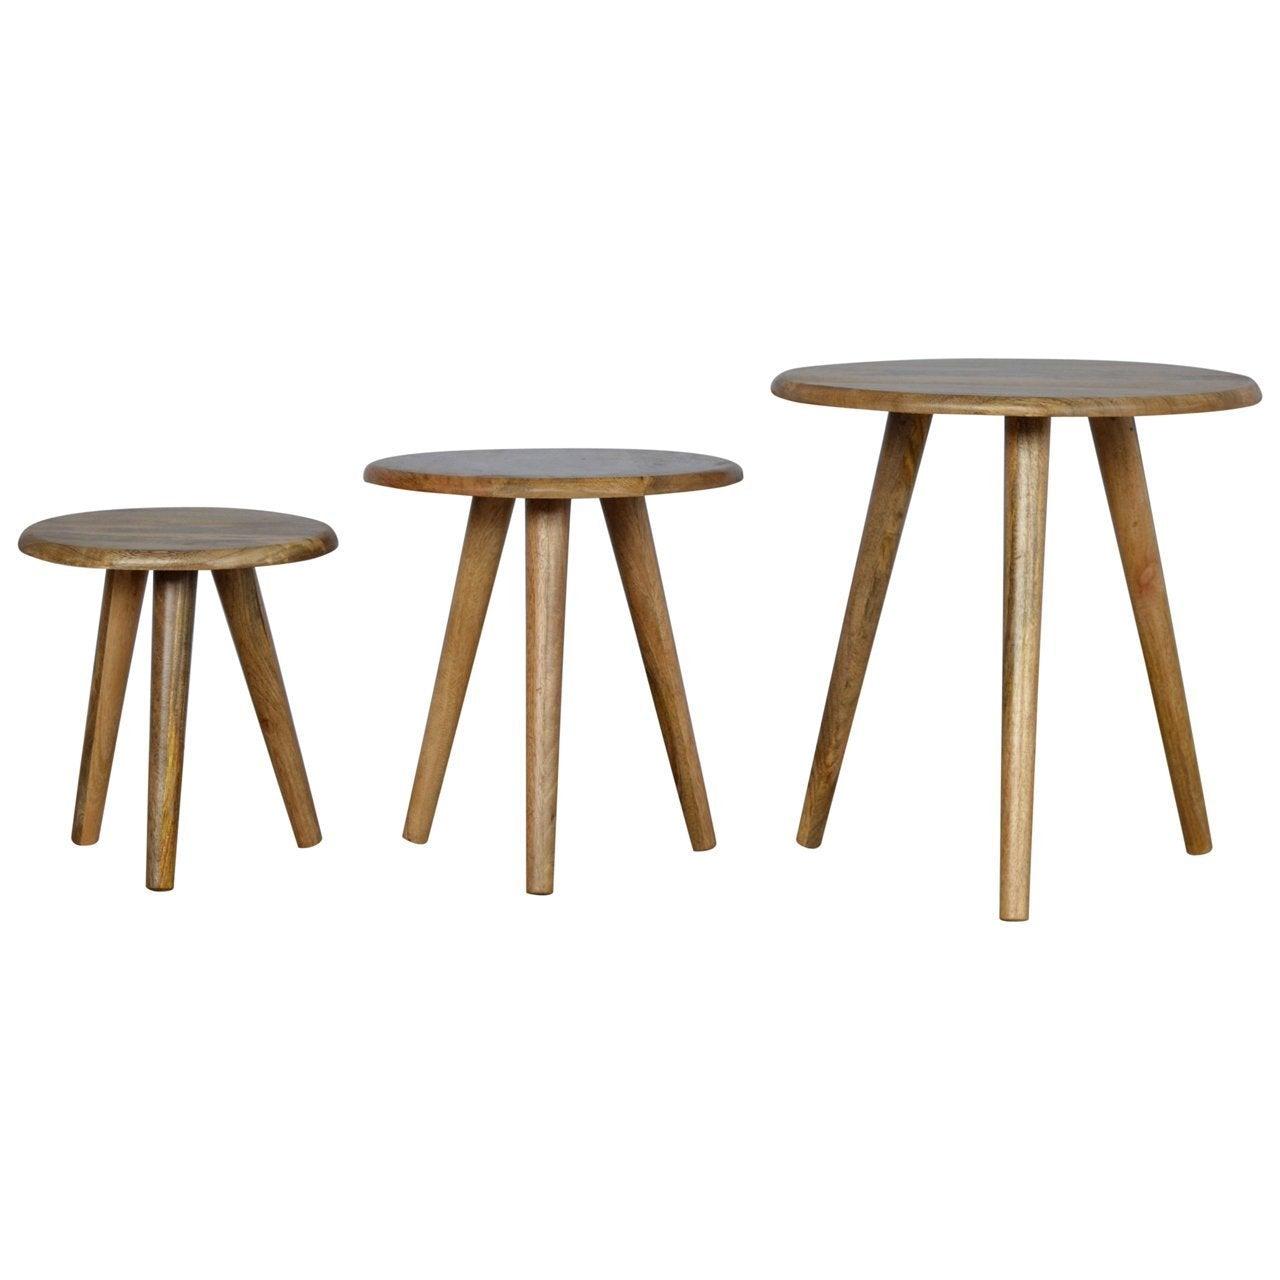 Nordic style stool set of 3 - crimblefest furniture - image 1